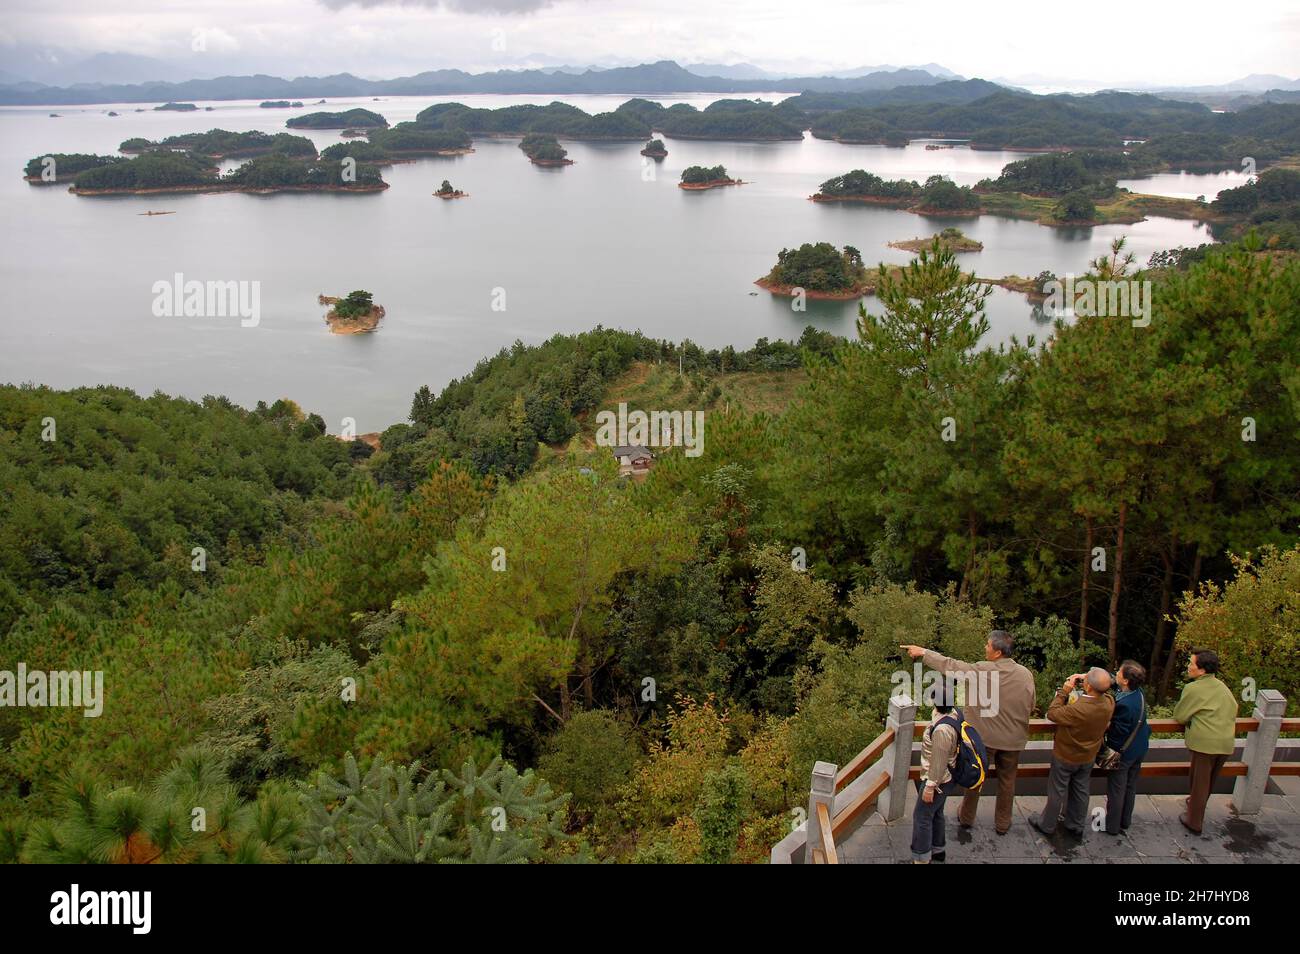 Qiandao Hu, province de Zhejiang, Chine : touristes à un point de vue surplombant le lac et les îles.Qiandao Hu se traduit par Thousand Island Lake. Banque D'Images